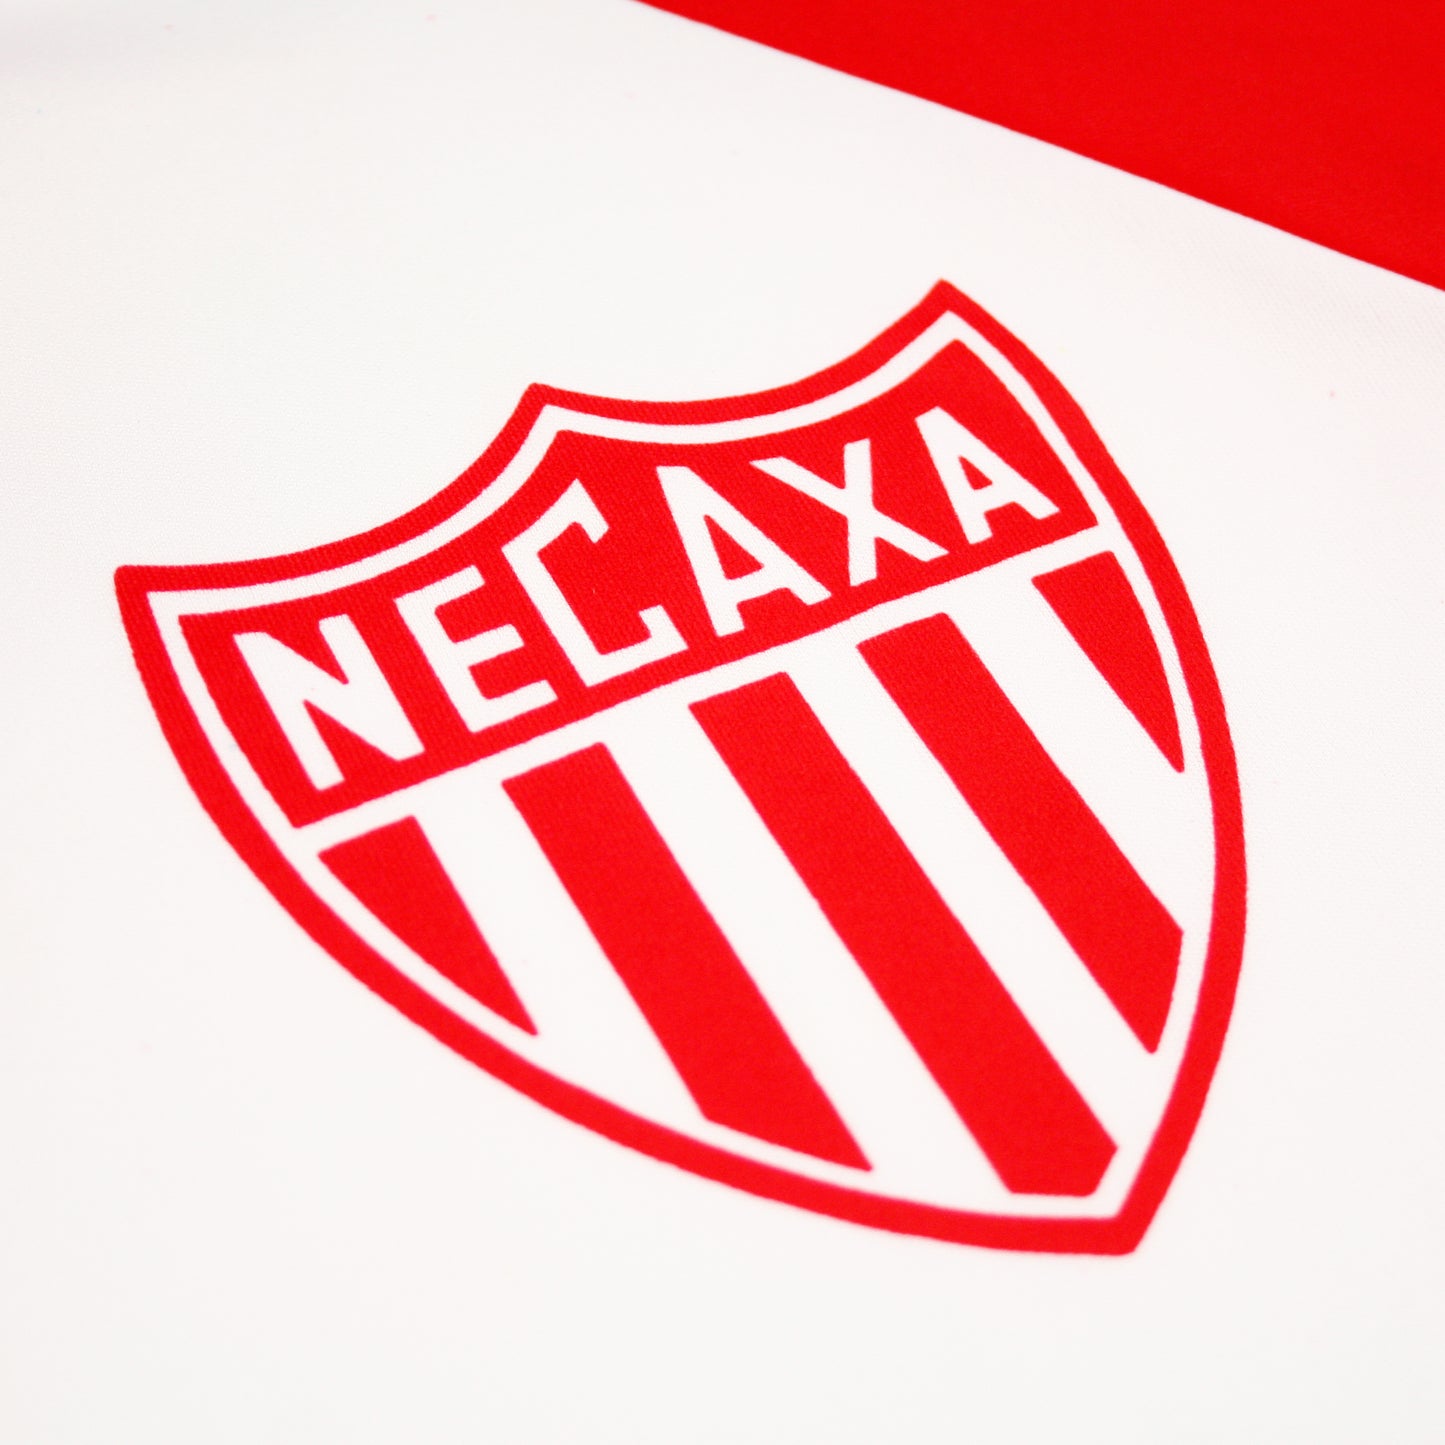 Club Necaxa 94/95 • Camiseta Visitante • XL